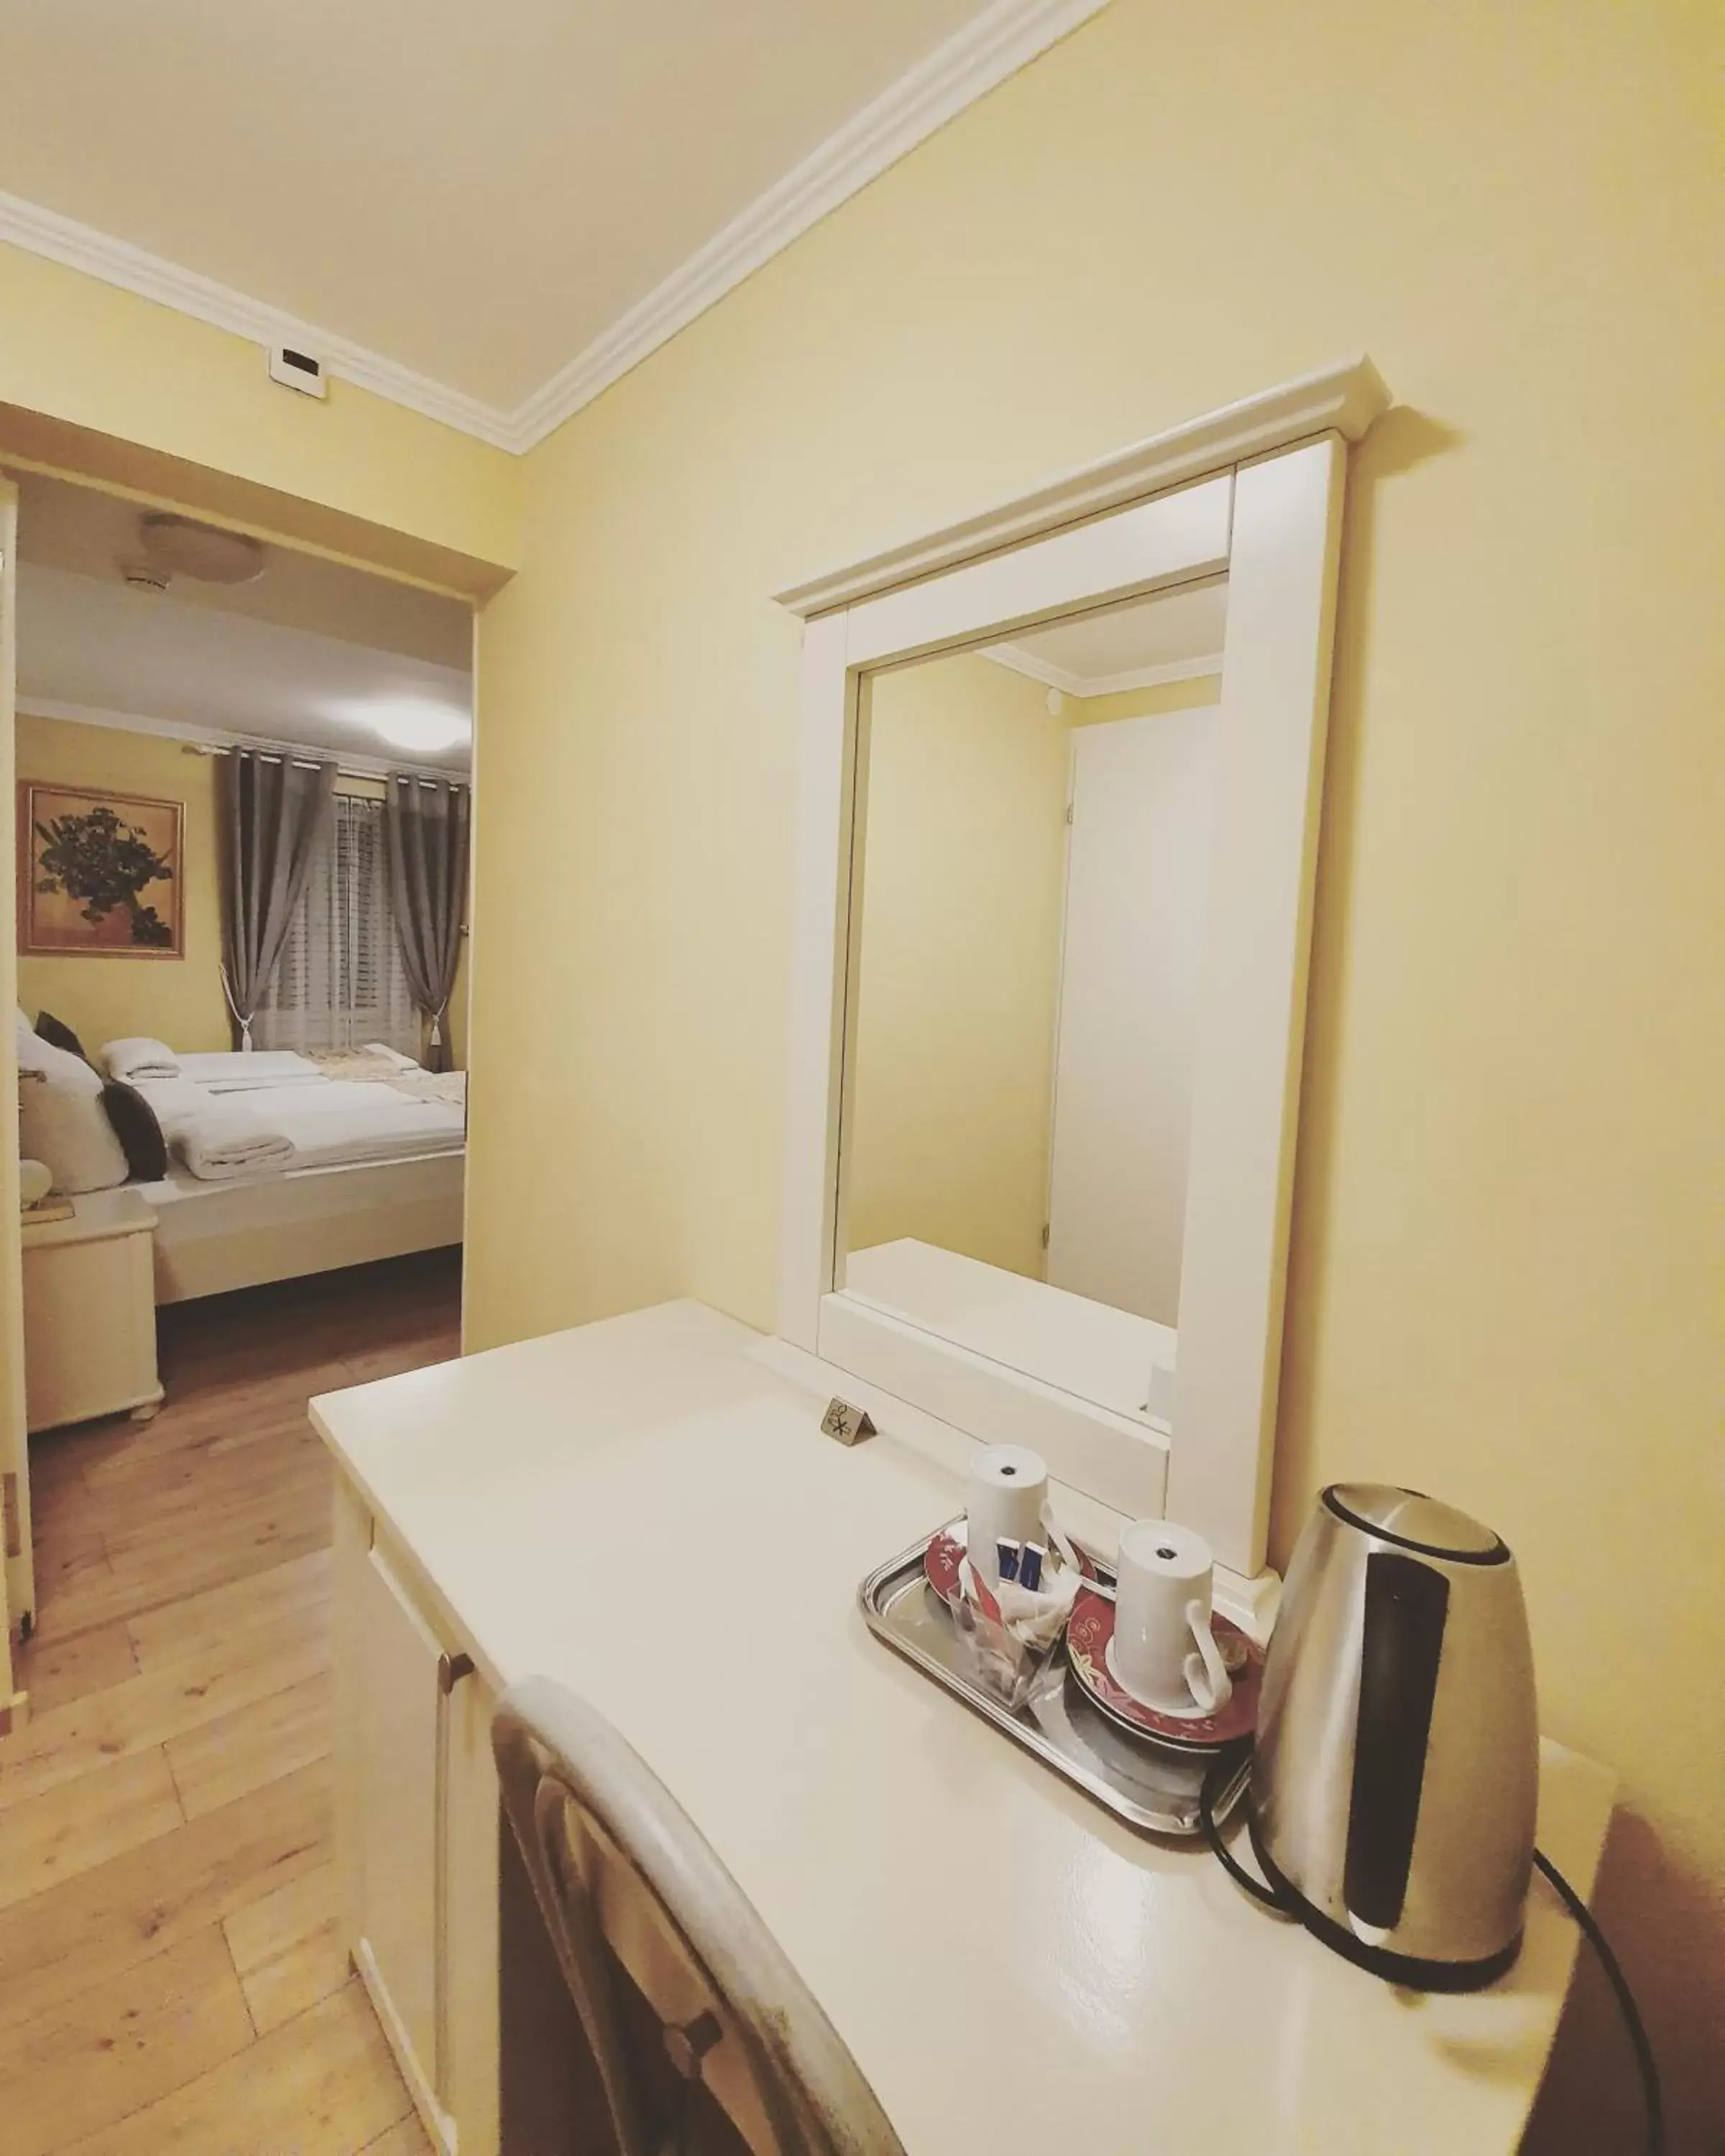 Coffee/tea facilities, Bathroom in Esos Hotel Quelle